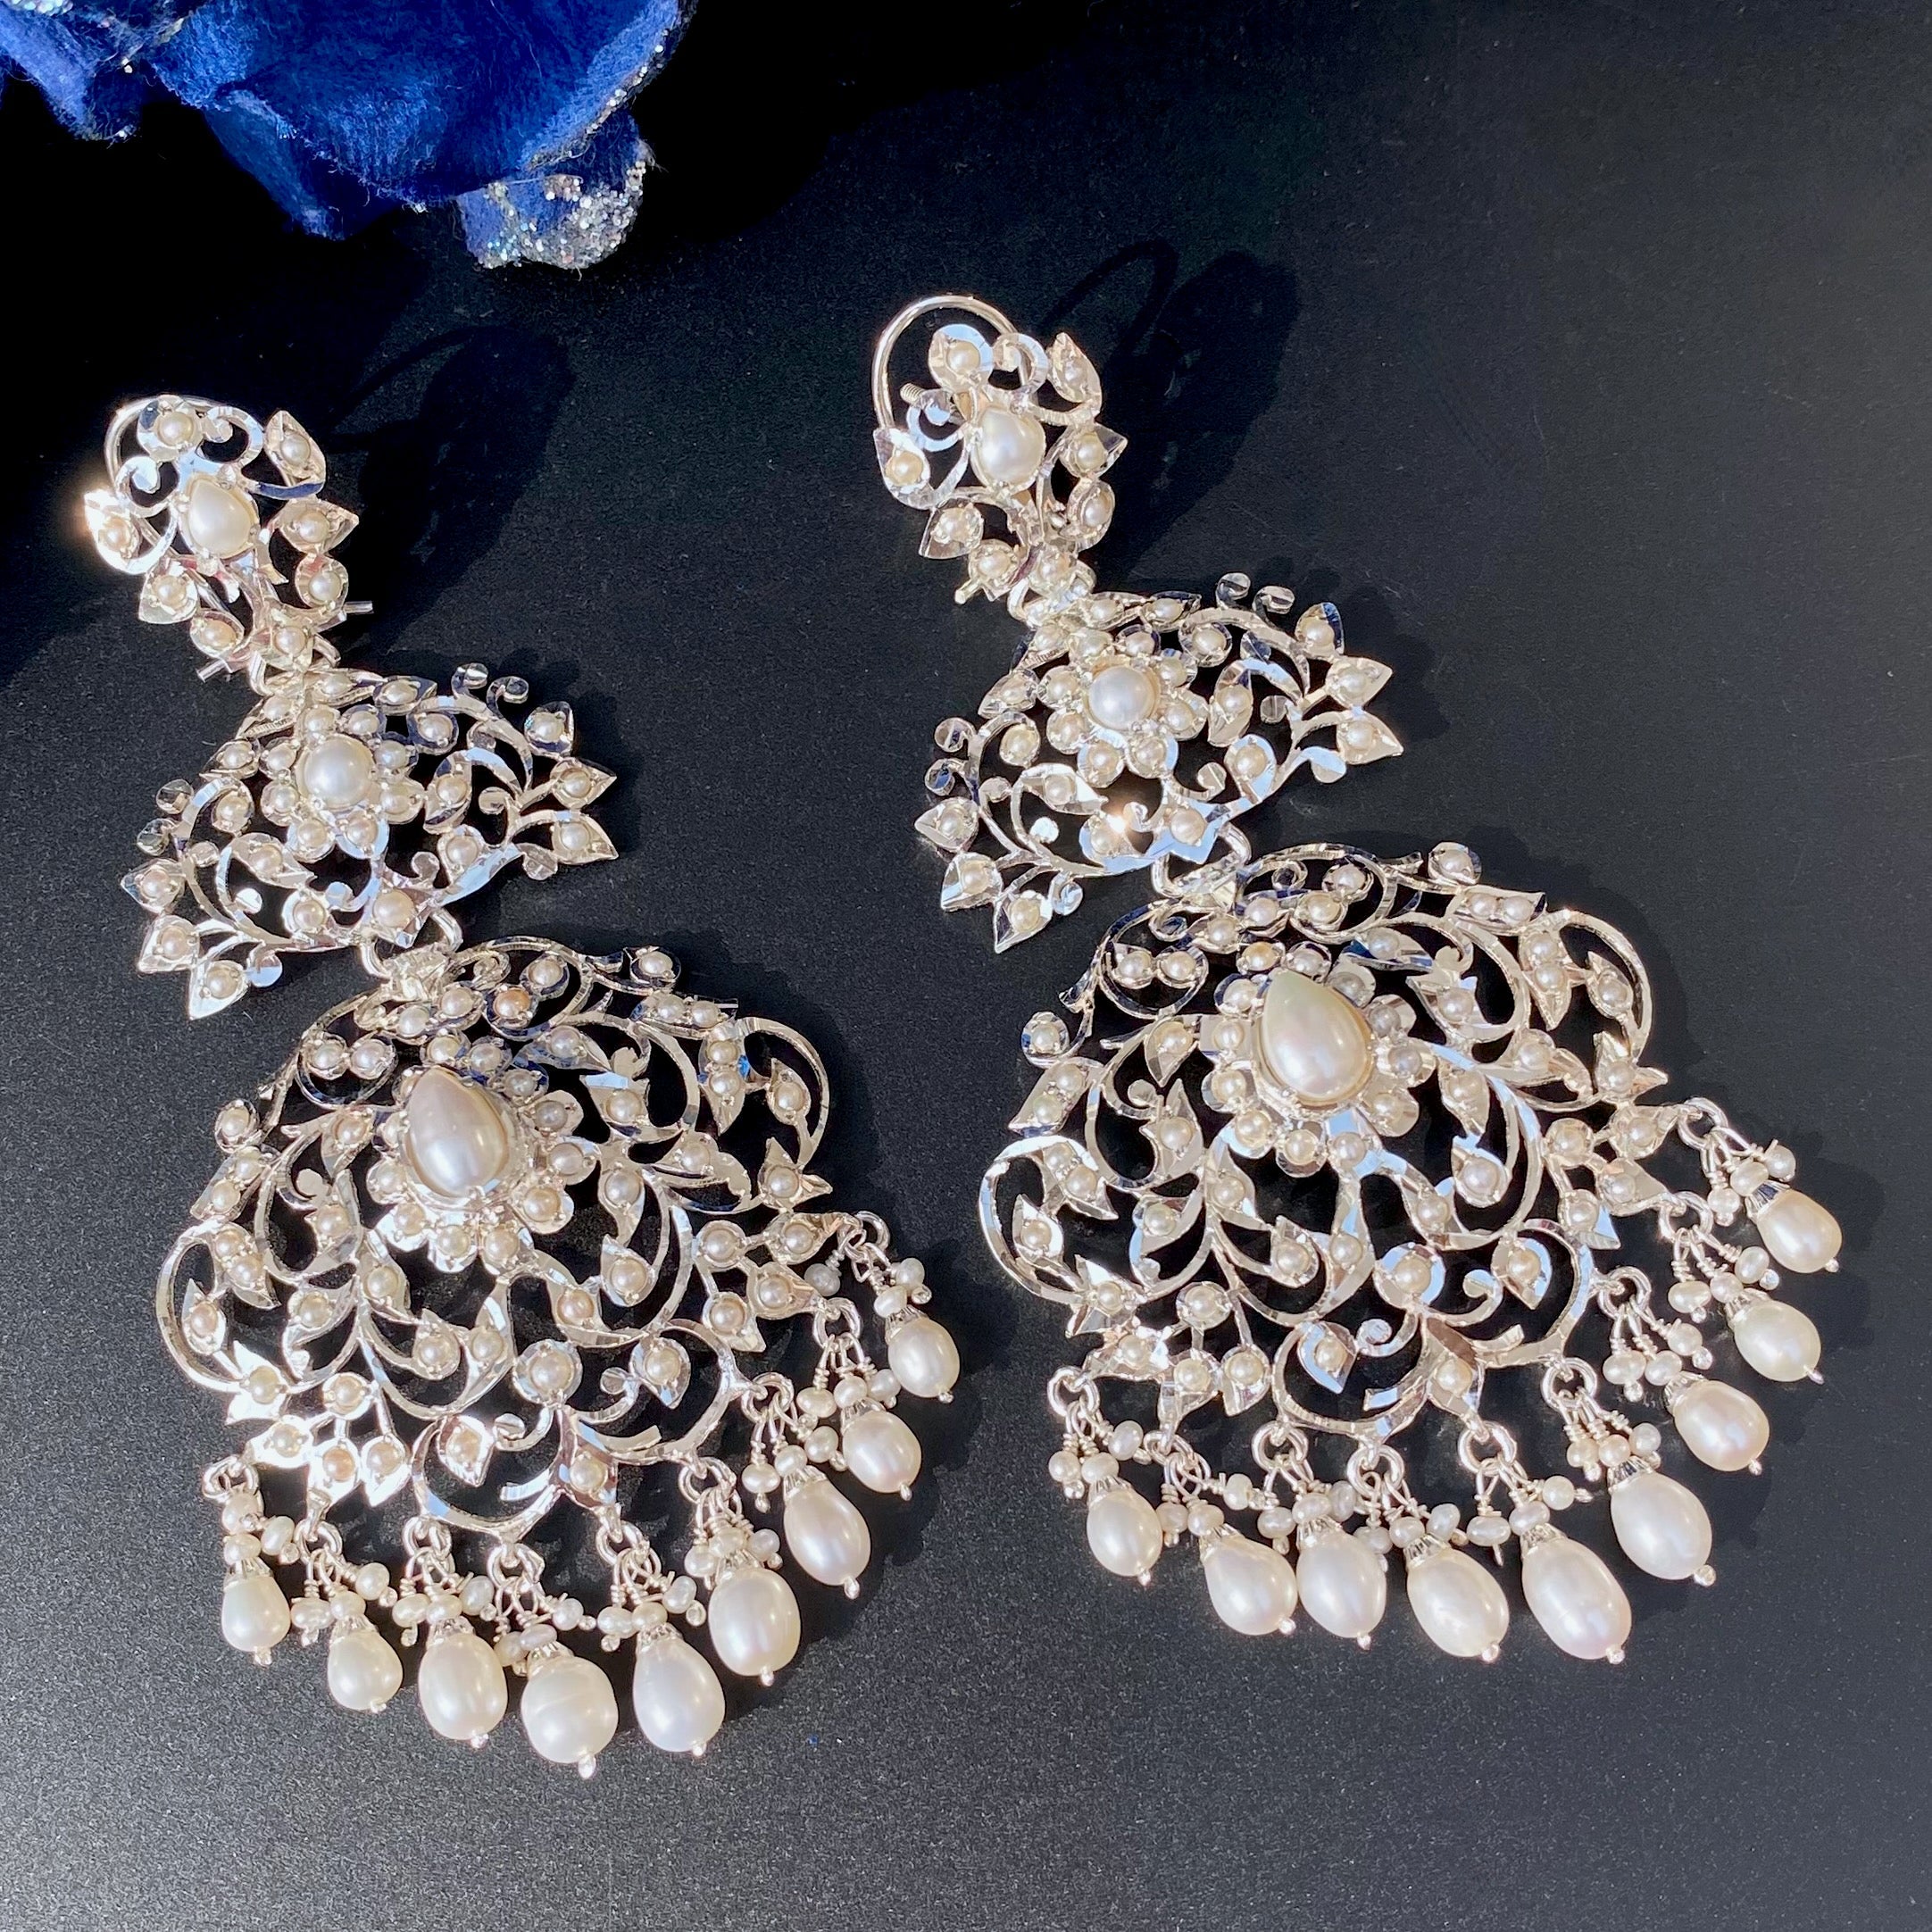 Edwardian Style Silver Danglers | Statement Pearl Earrings 